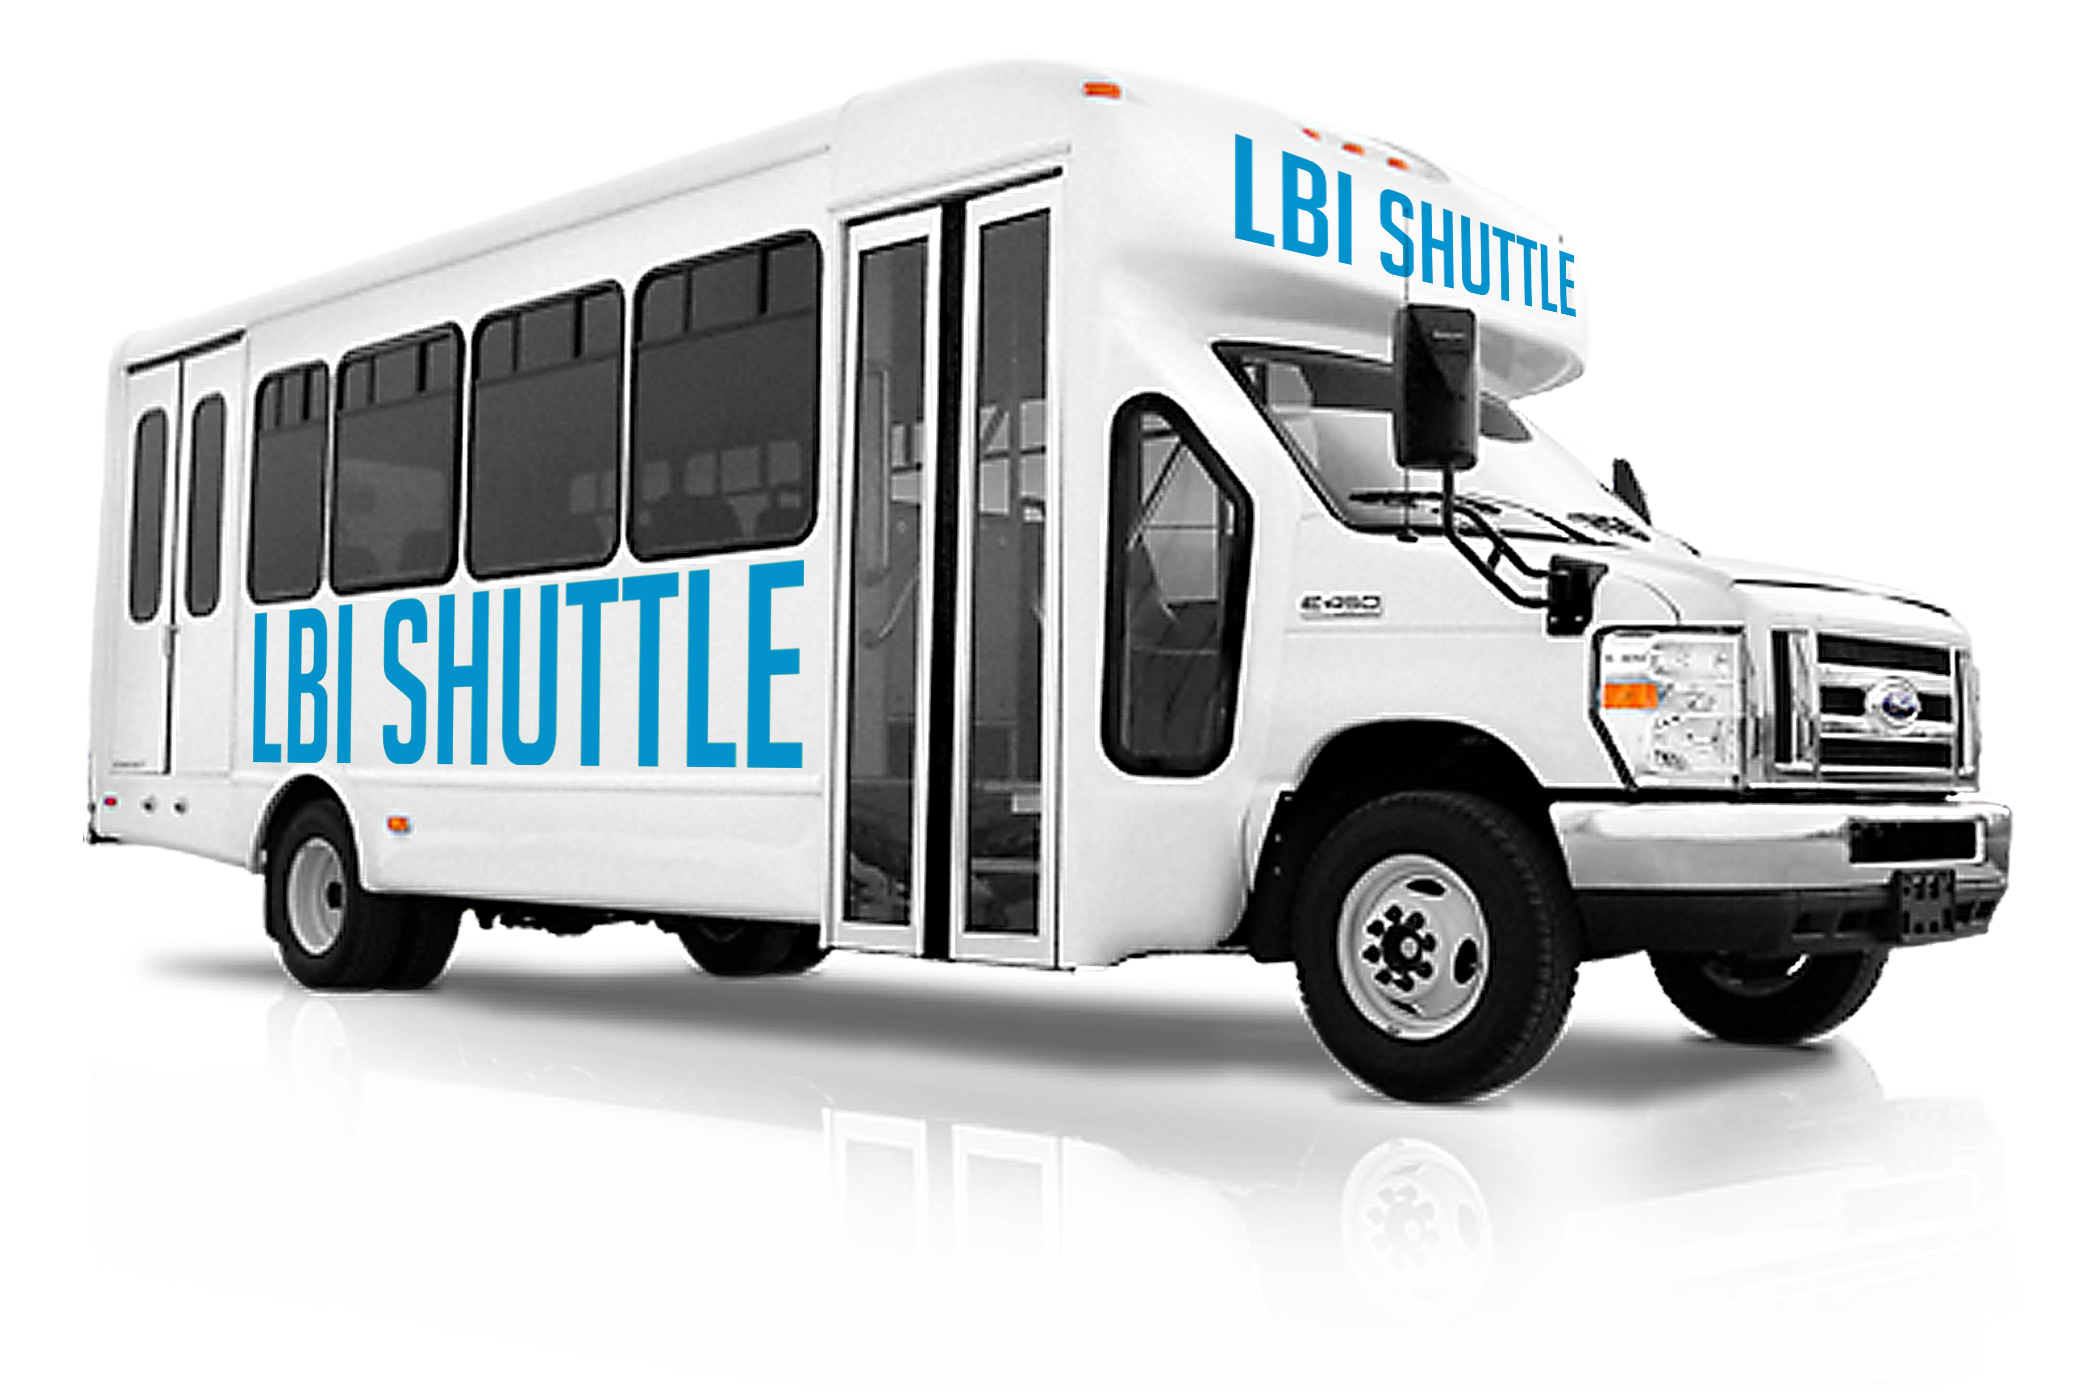 LBI Shuttle